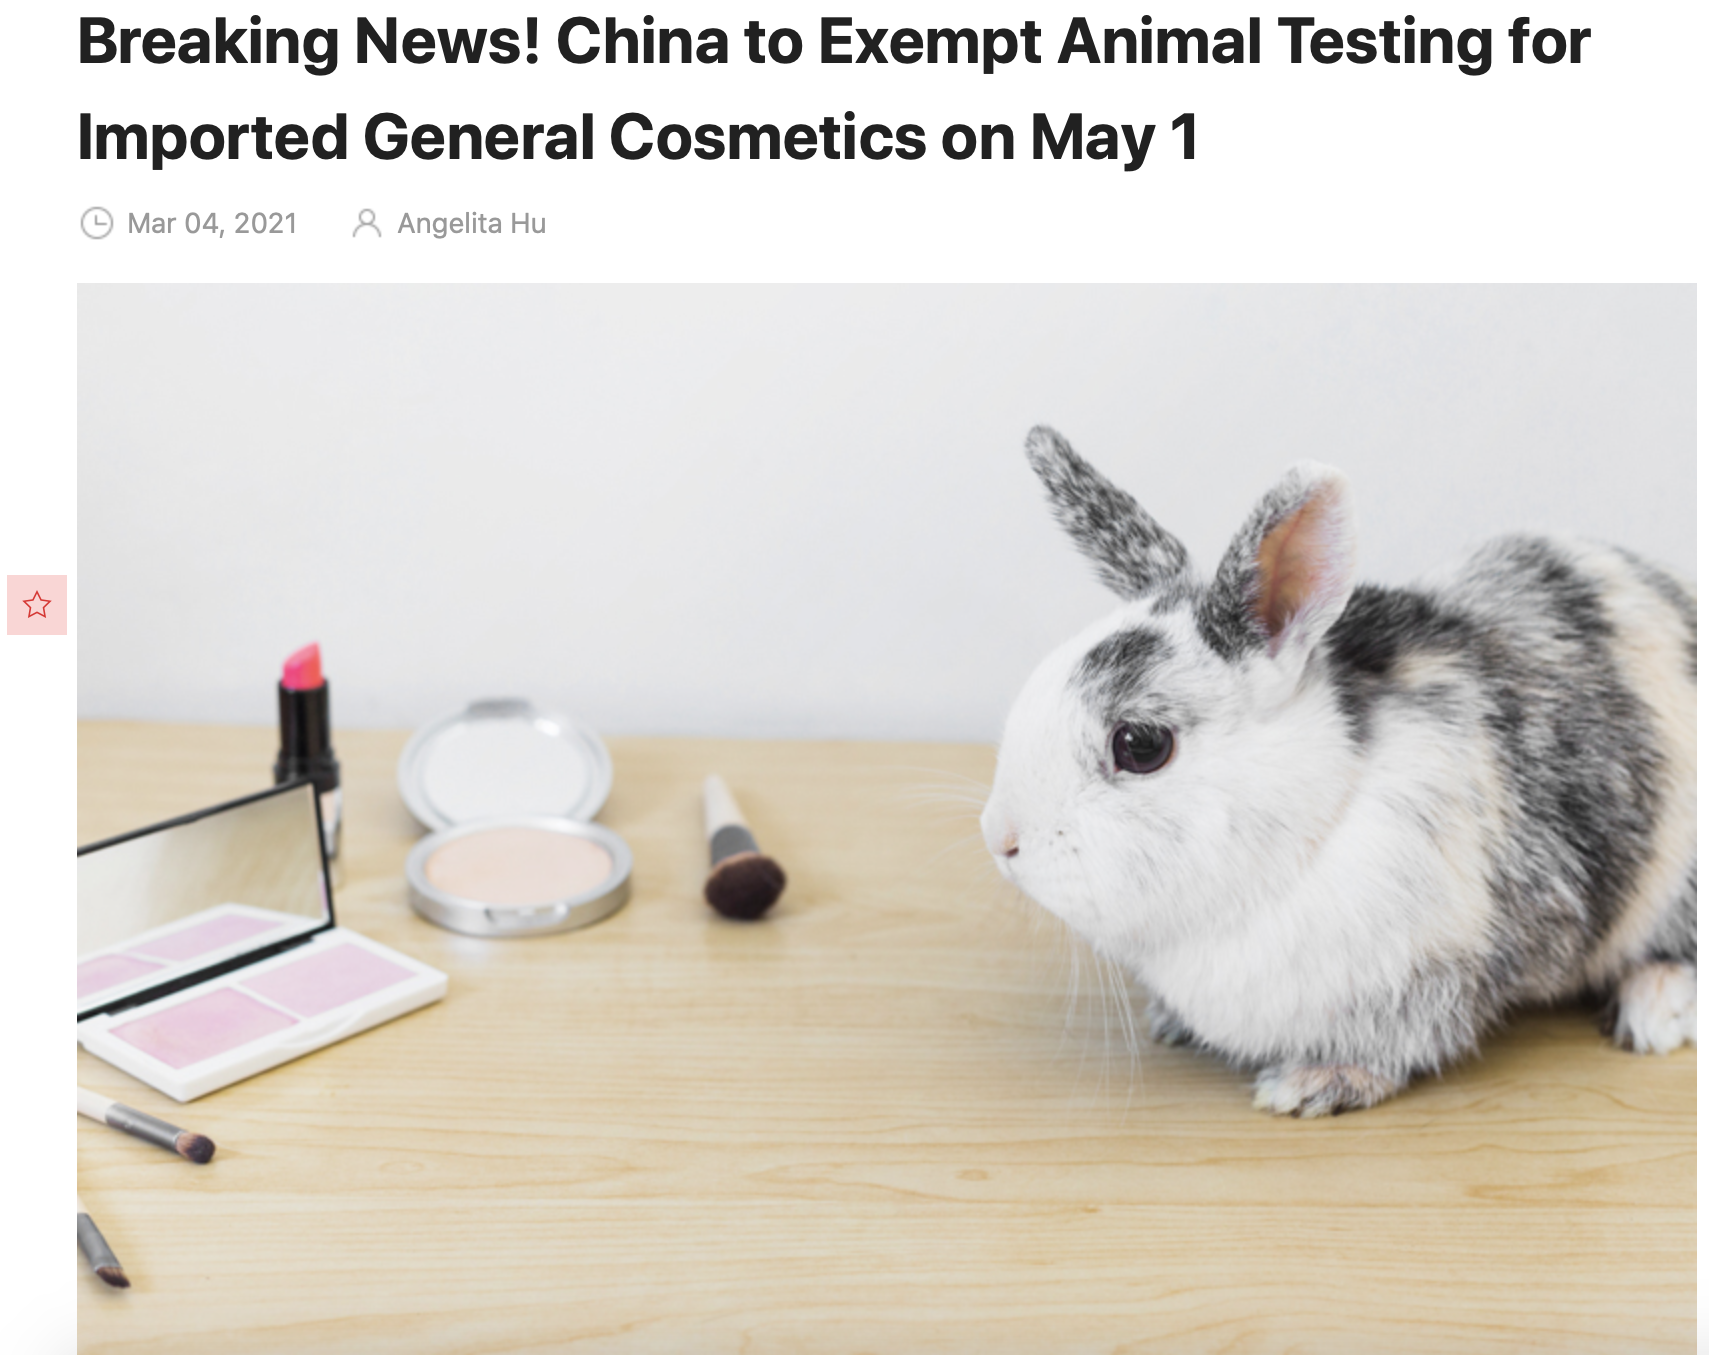 【中國宣布5/1起 進口普通化妝品將免除動物實驗】